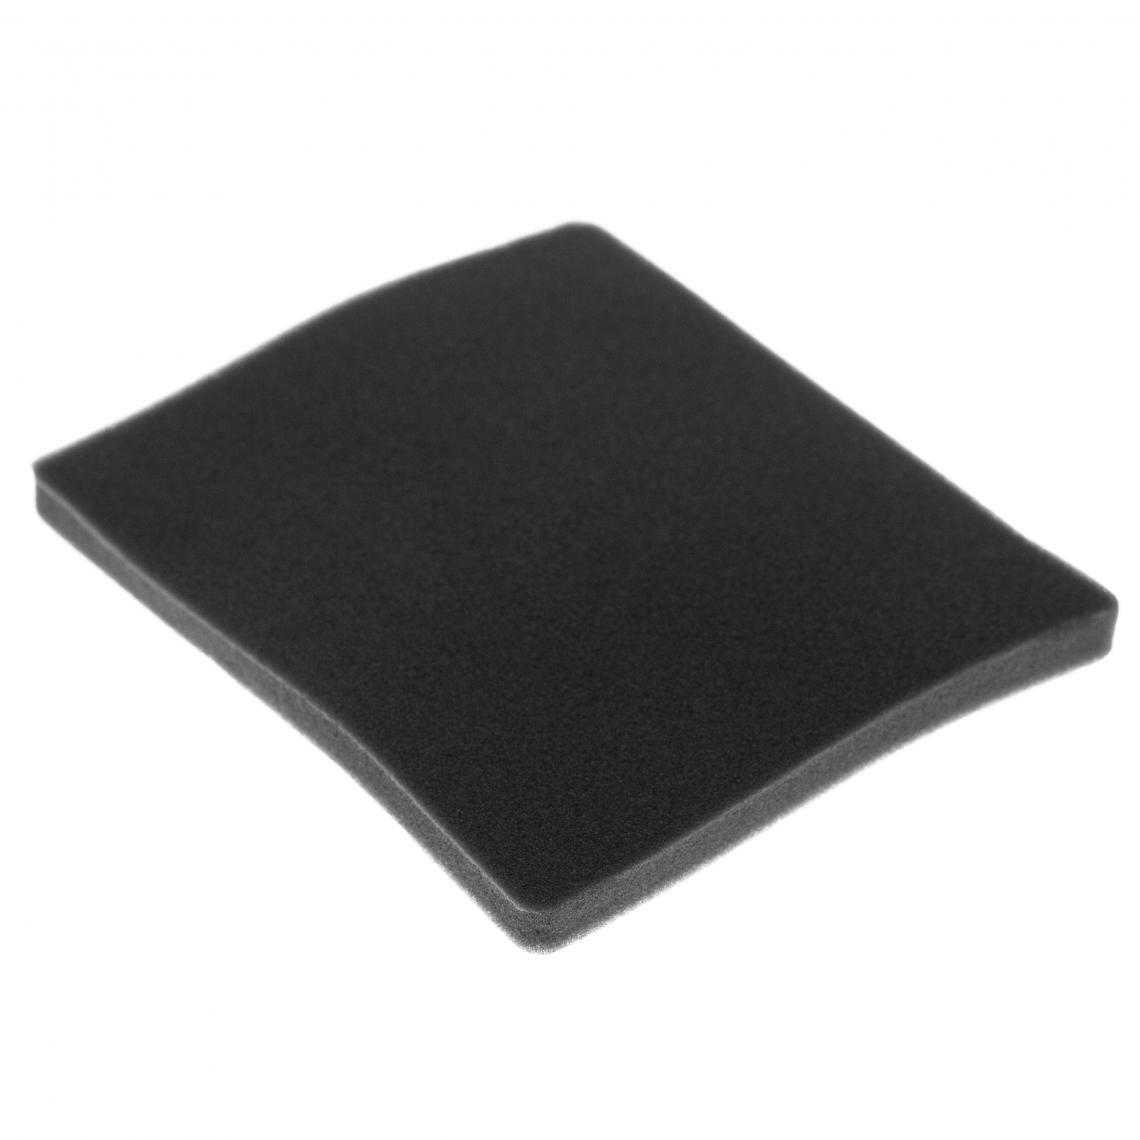 Vhbw - vhbw Filtre compatible avec Electrolux ZJM6835 (903151569) aspirateur - filtre de sortie d'air (filtre éponge), noir - Accessoire entretien des sols